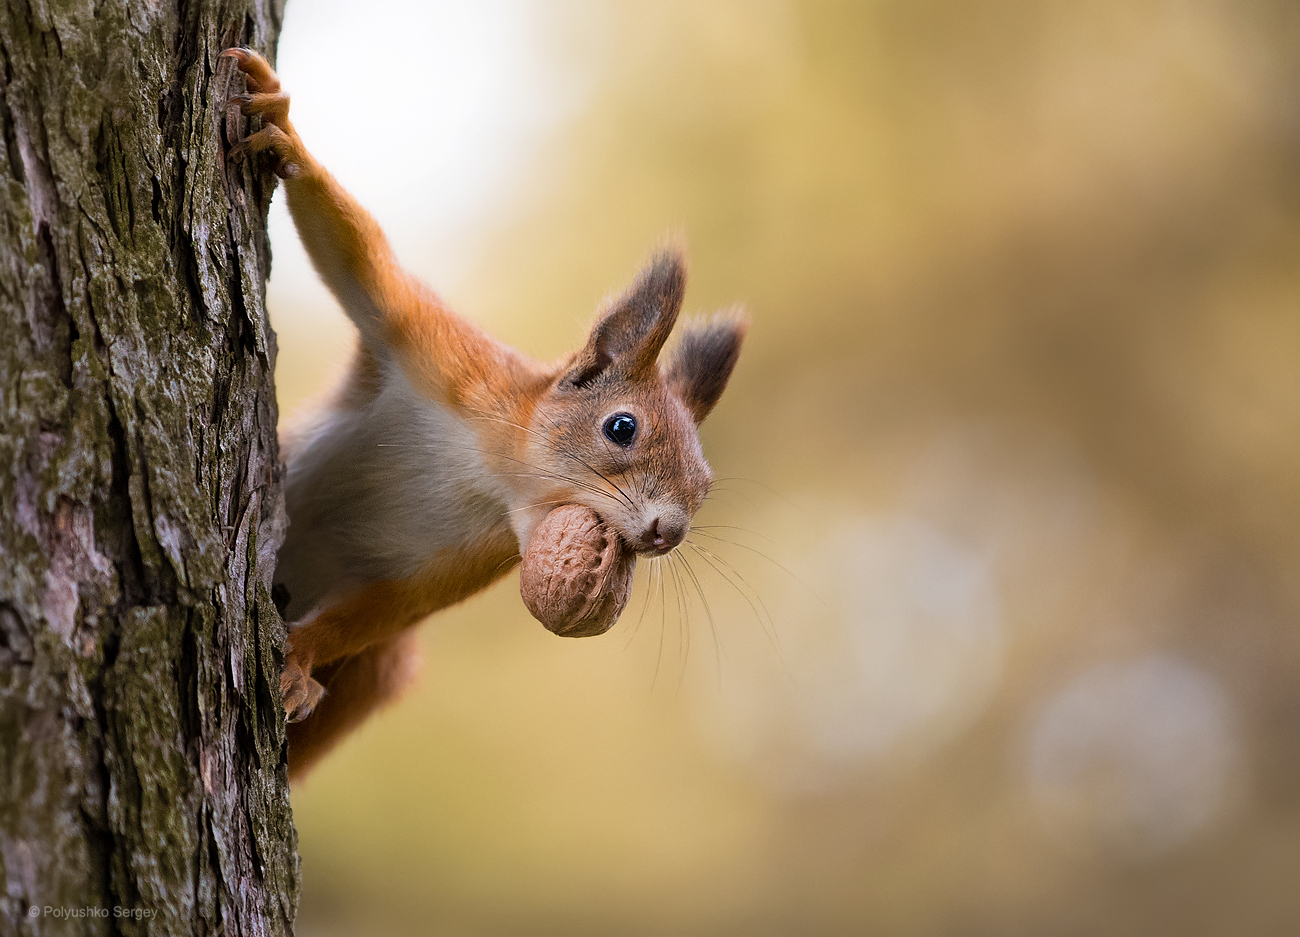 Фото Белка с орехом во рту на дереве. Фотограф Полюшко Сергей